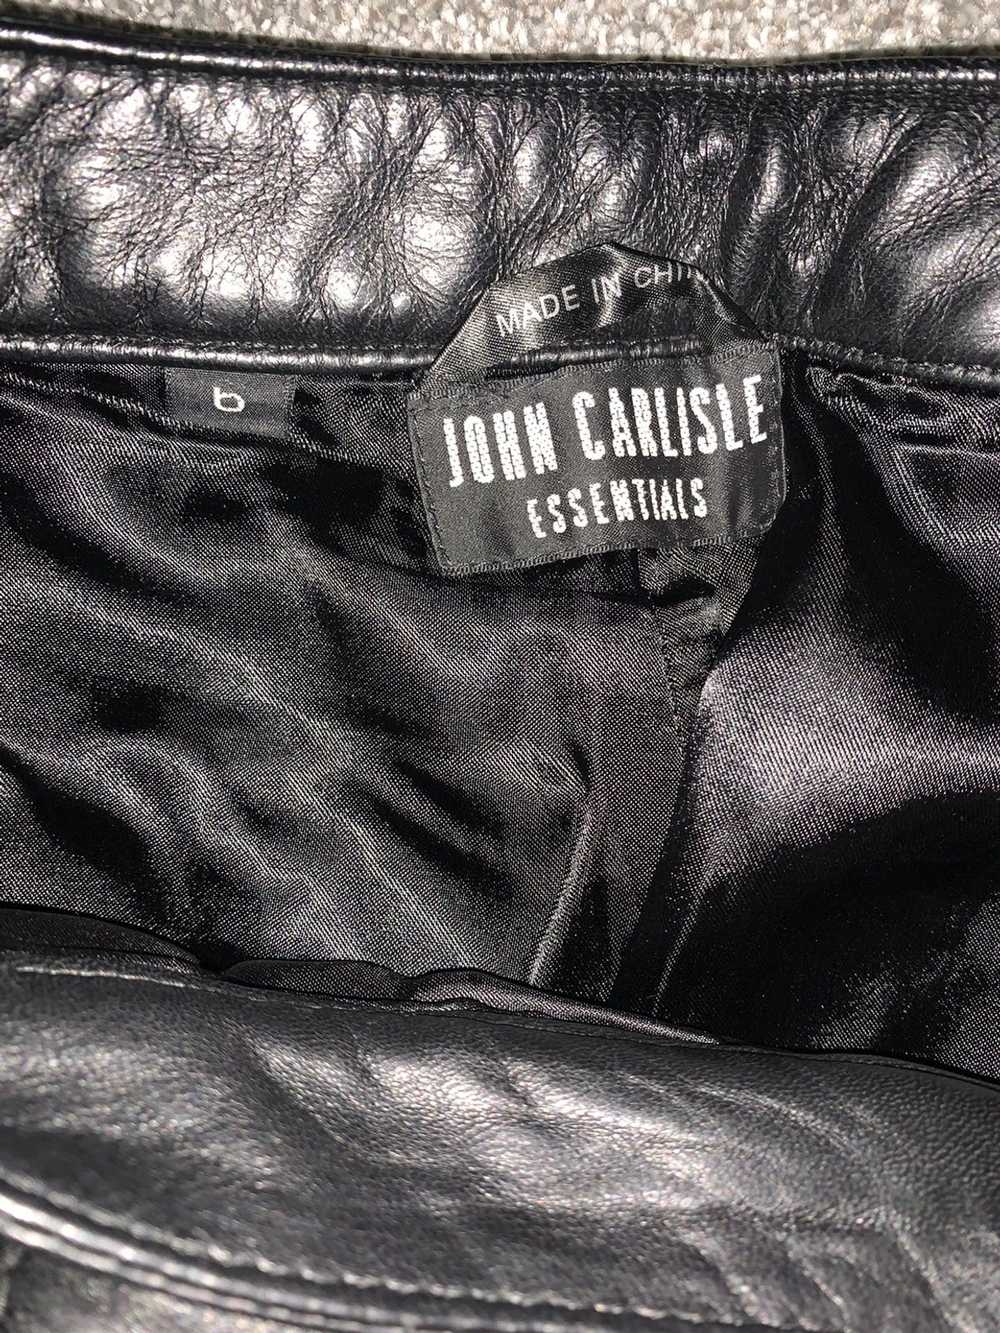 Genuine Leather × Vintage John Carlisle Essential… - image 3